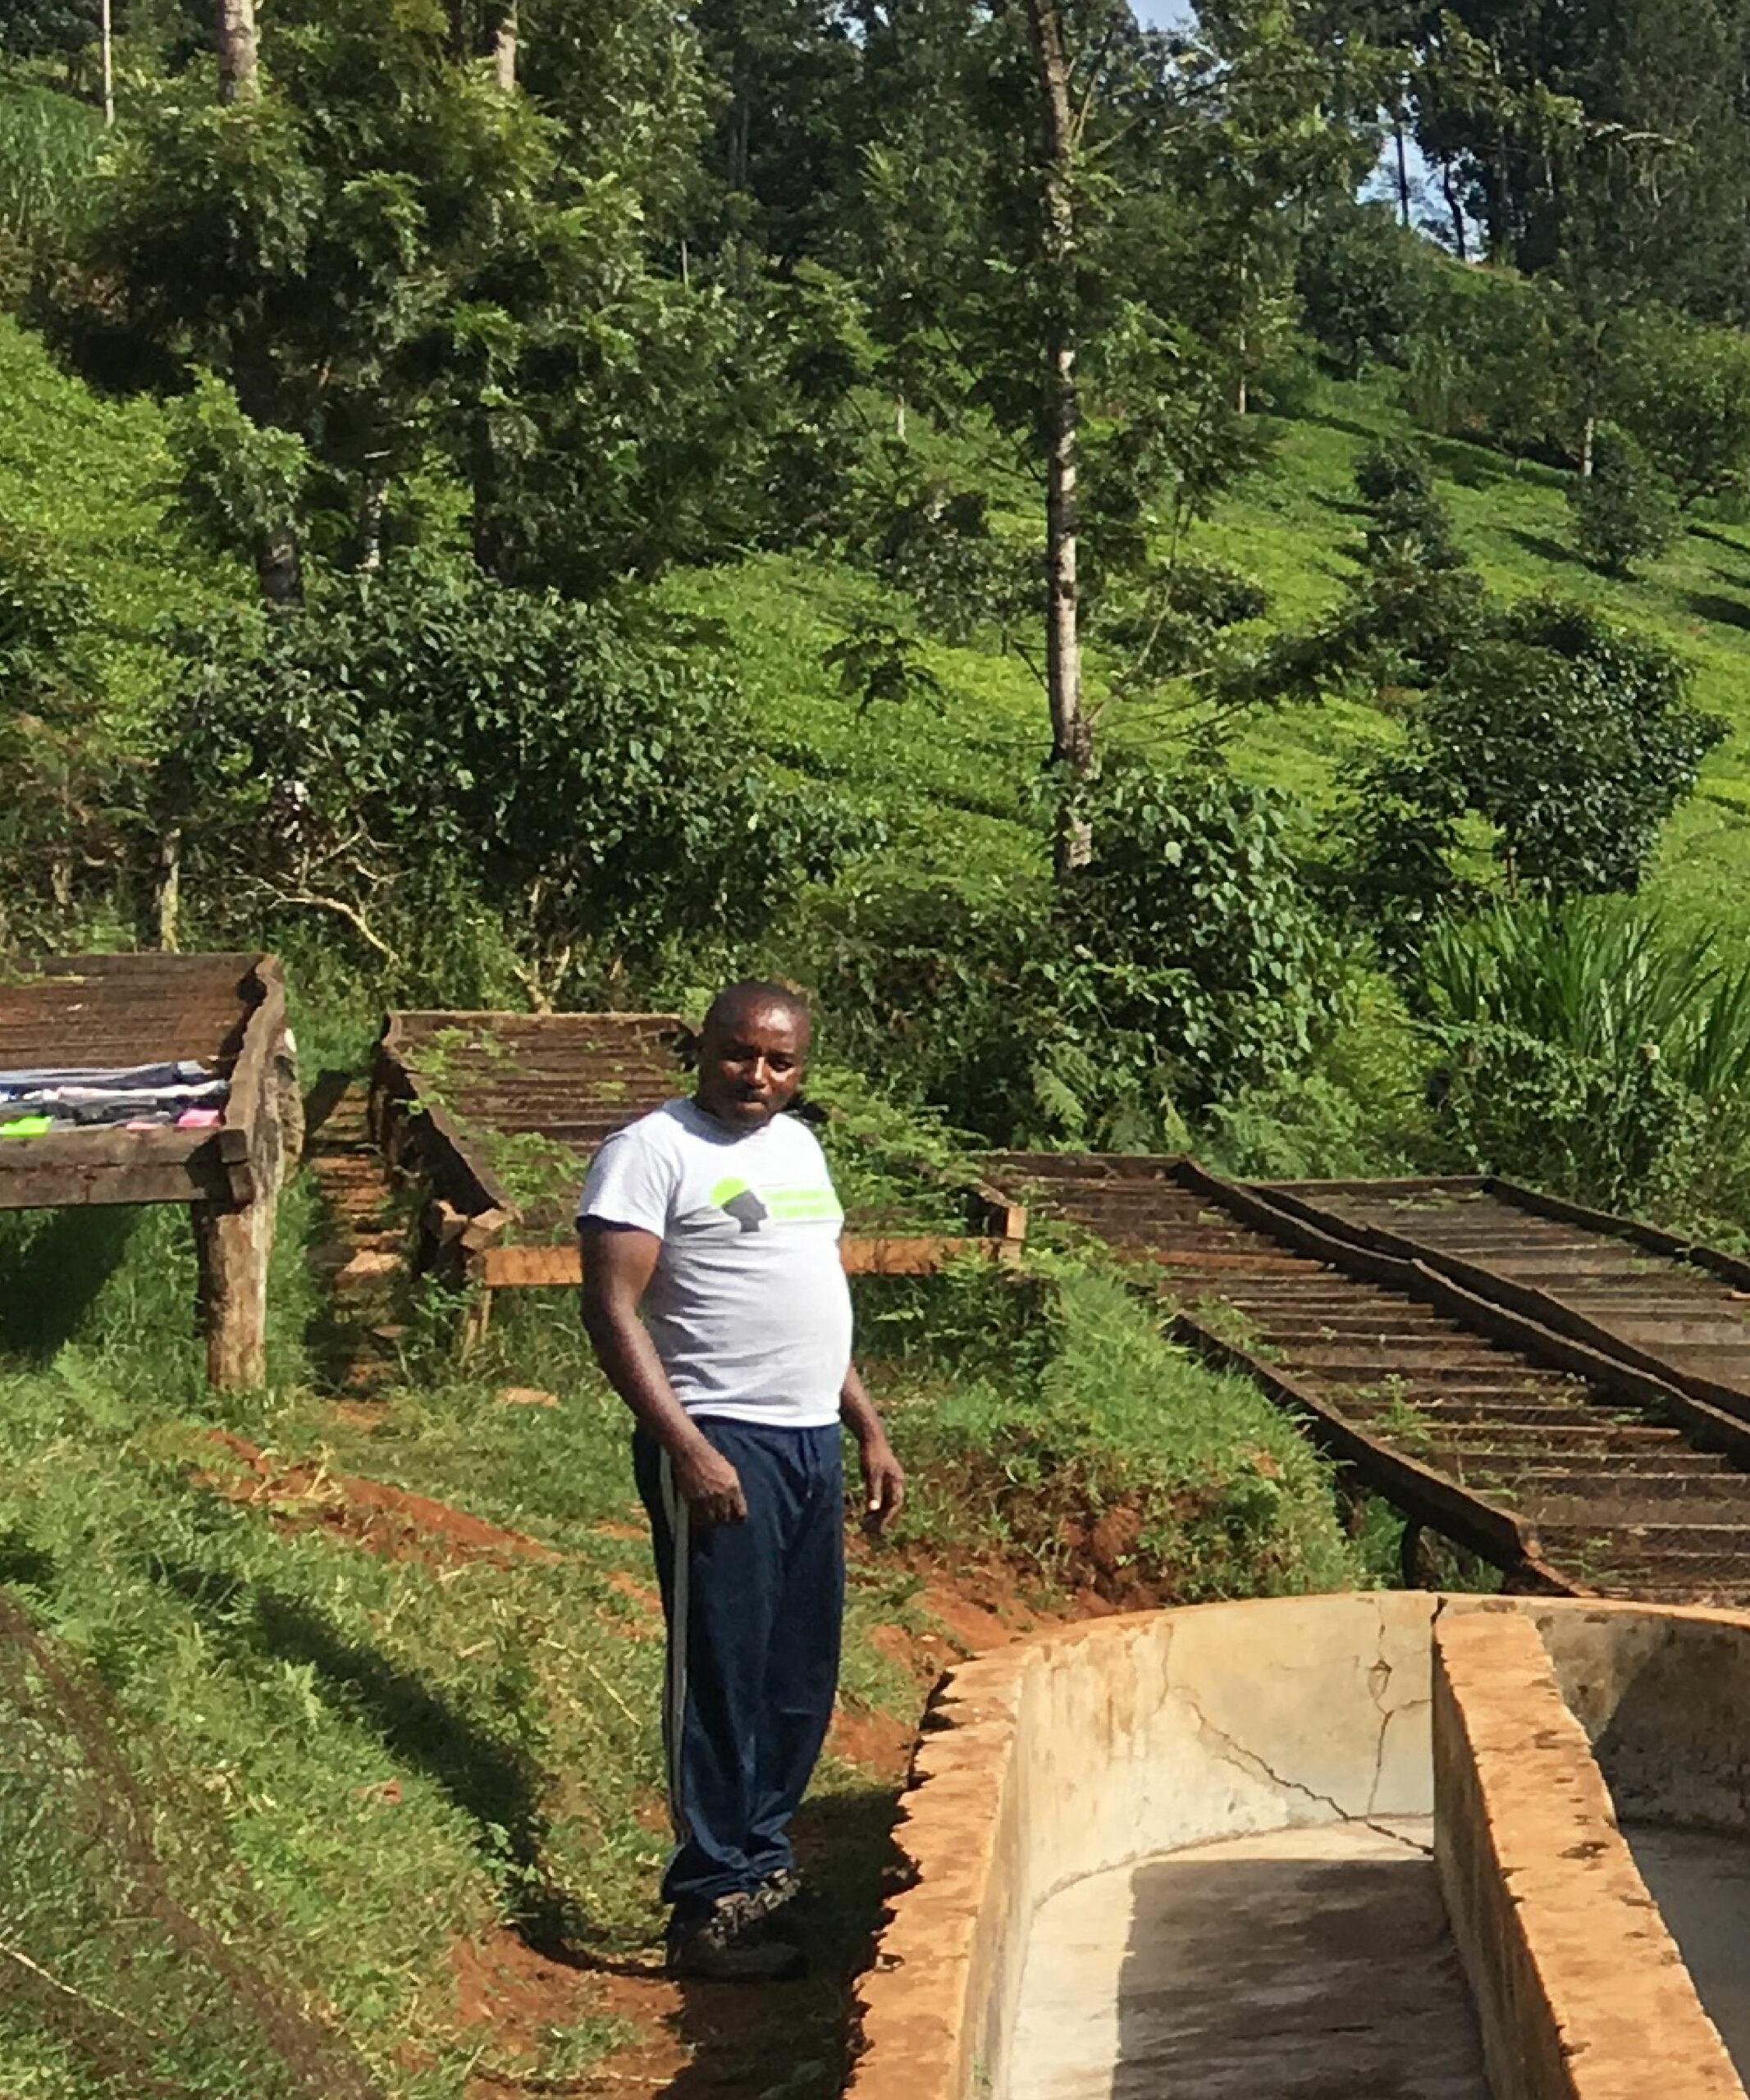 Производитель зеленого кофе Мозес Камура на своей ферме по выращиванию кофе из Кении